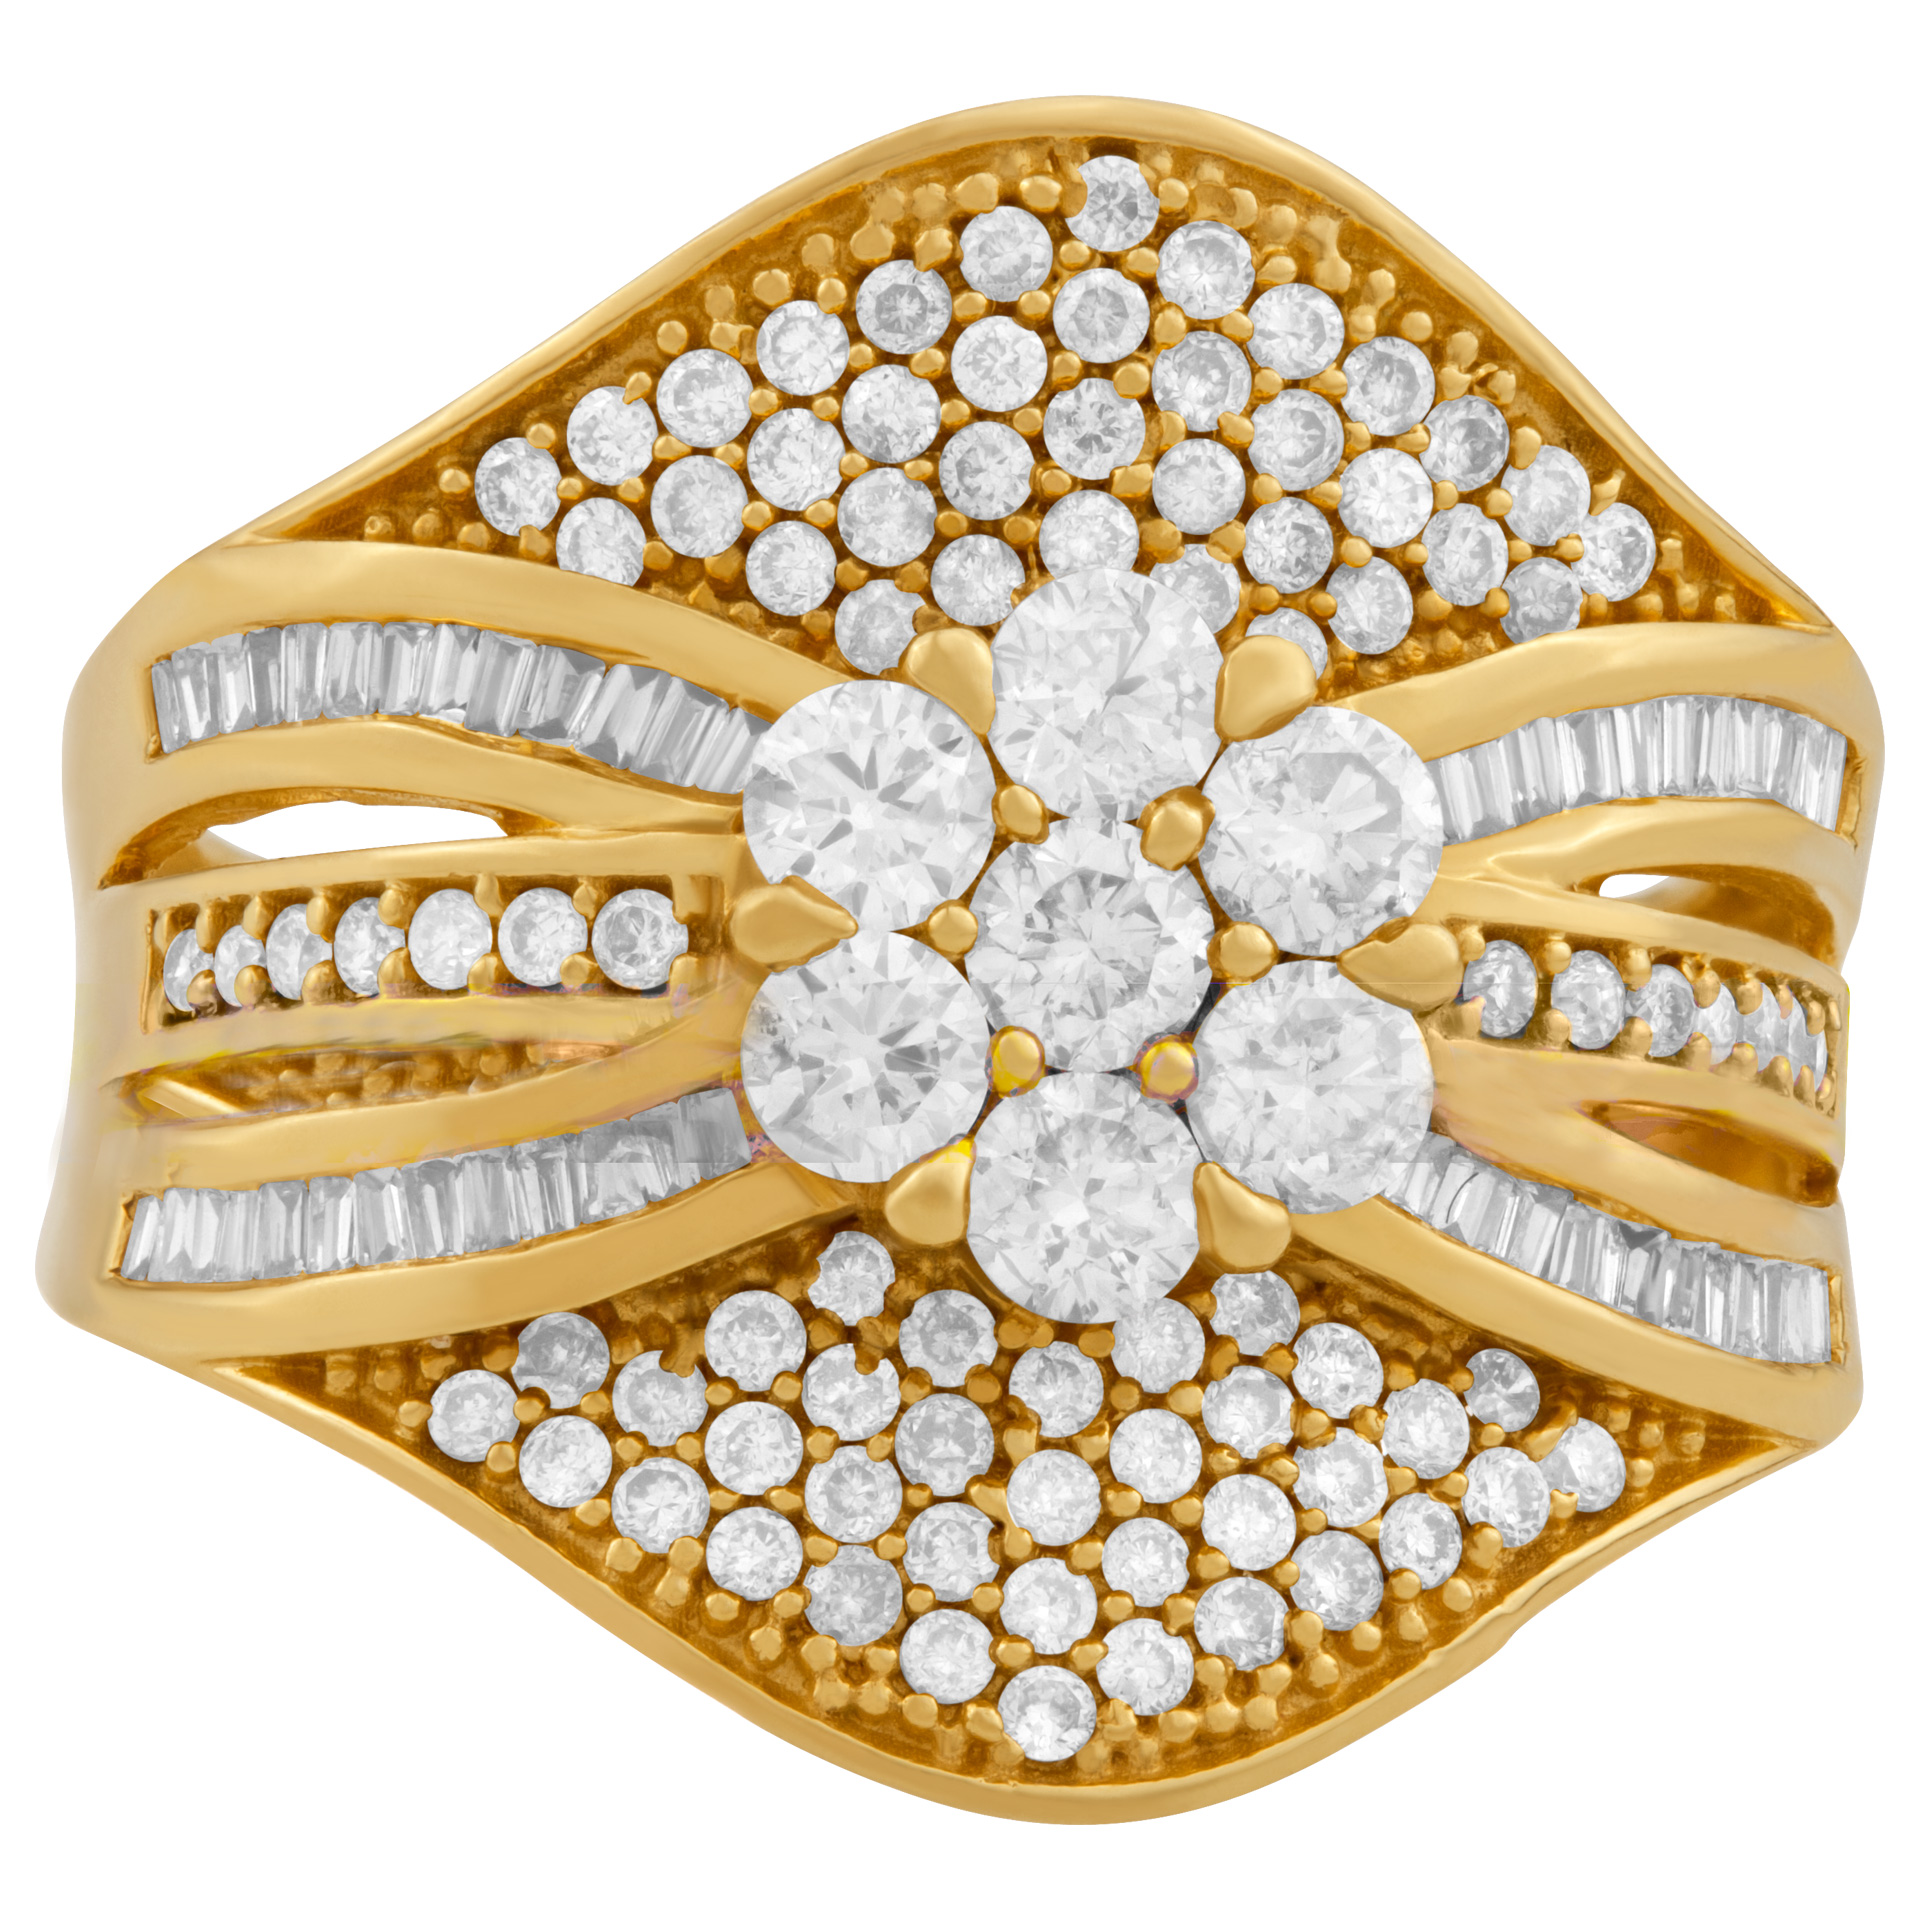 Diamond shield ring in 18K gold